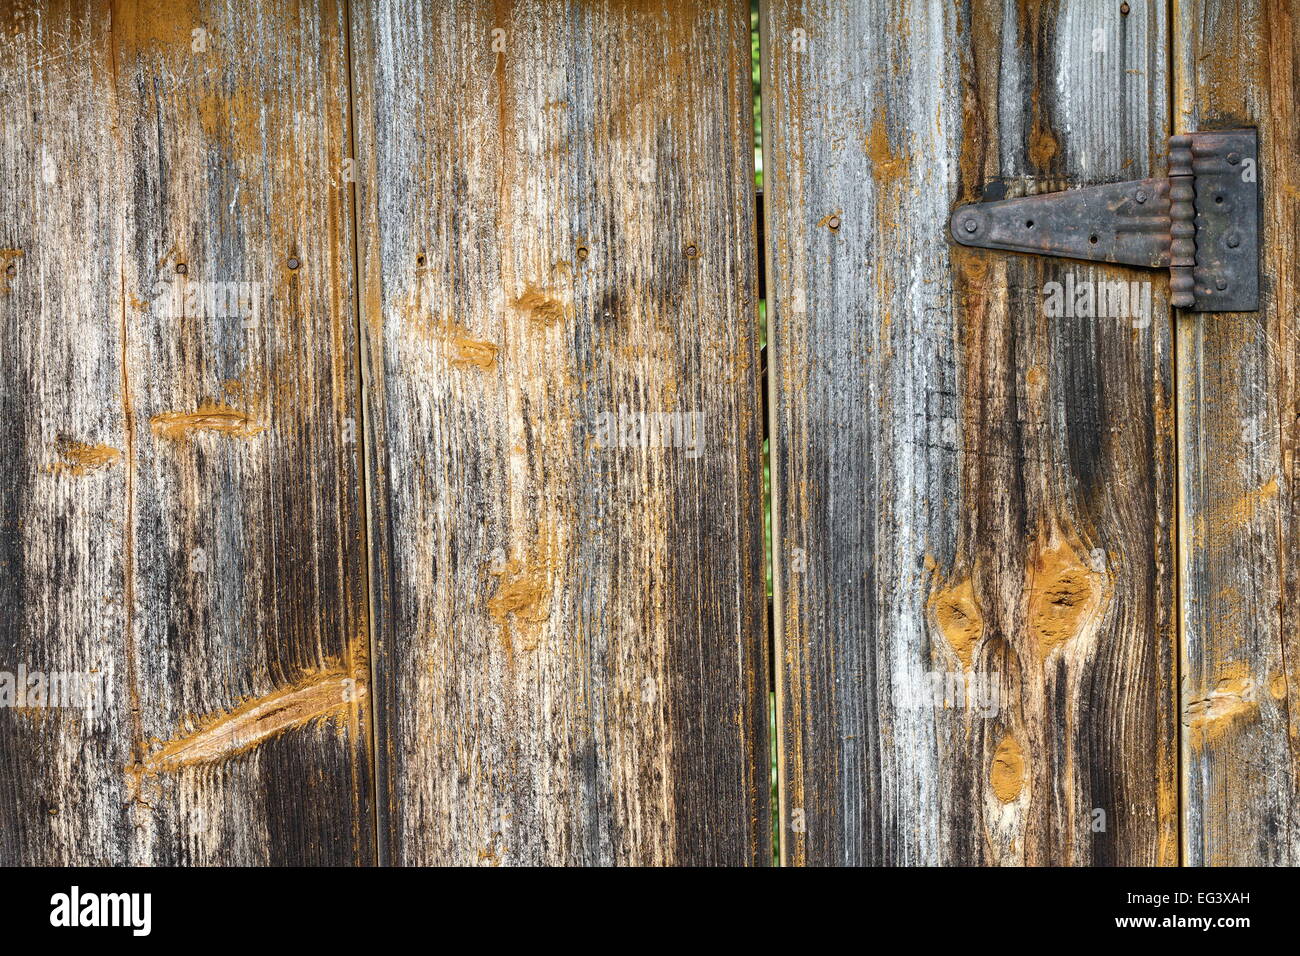 Dettaglio della trama di una vecchia porta di legno, close up Foto Stock